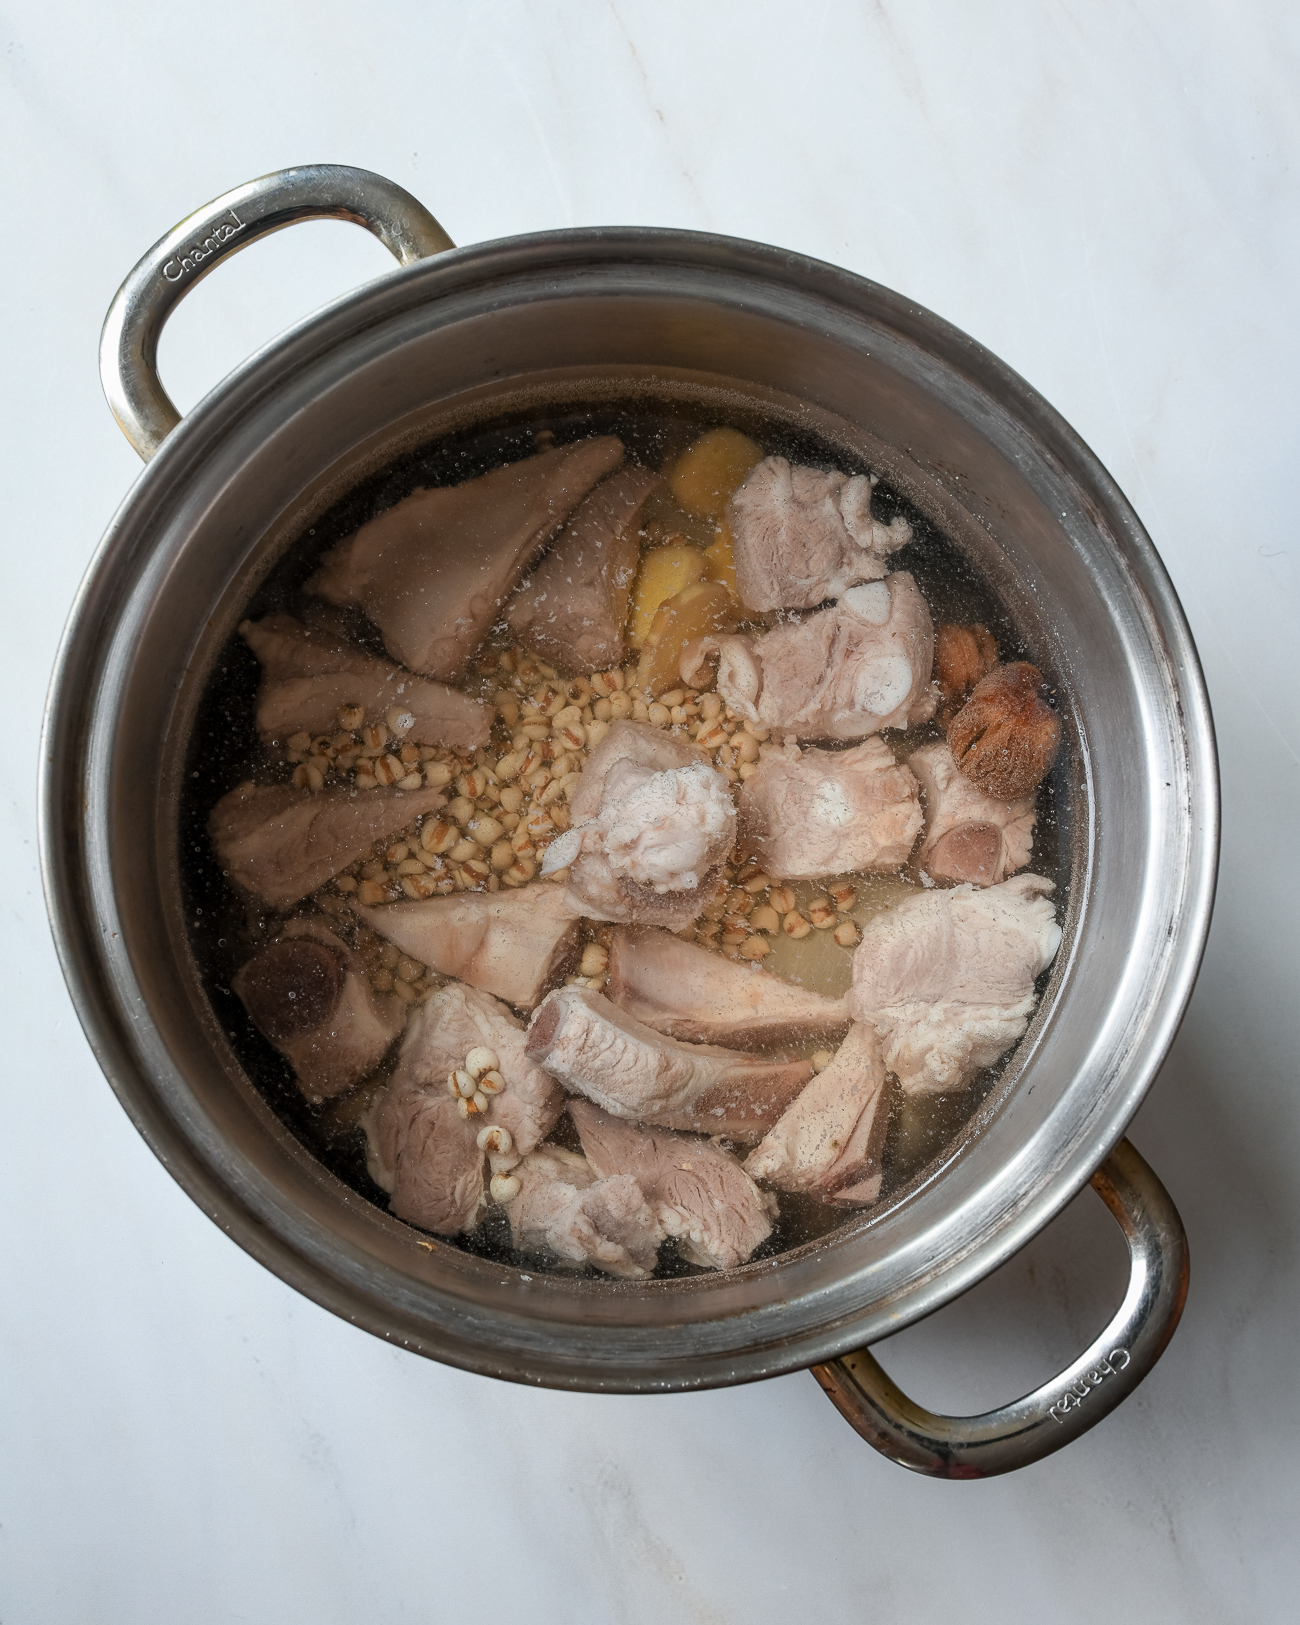 Huesos de cerdo escaldados con cebada, jengibre y dátiles en una olla sopera